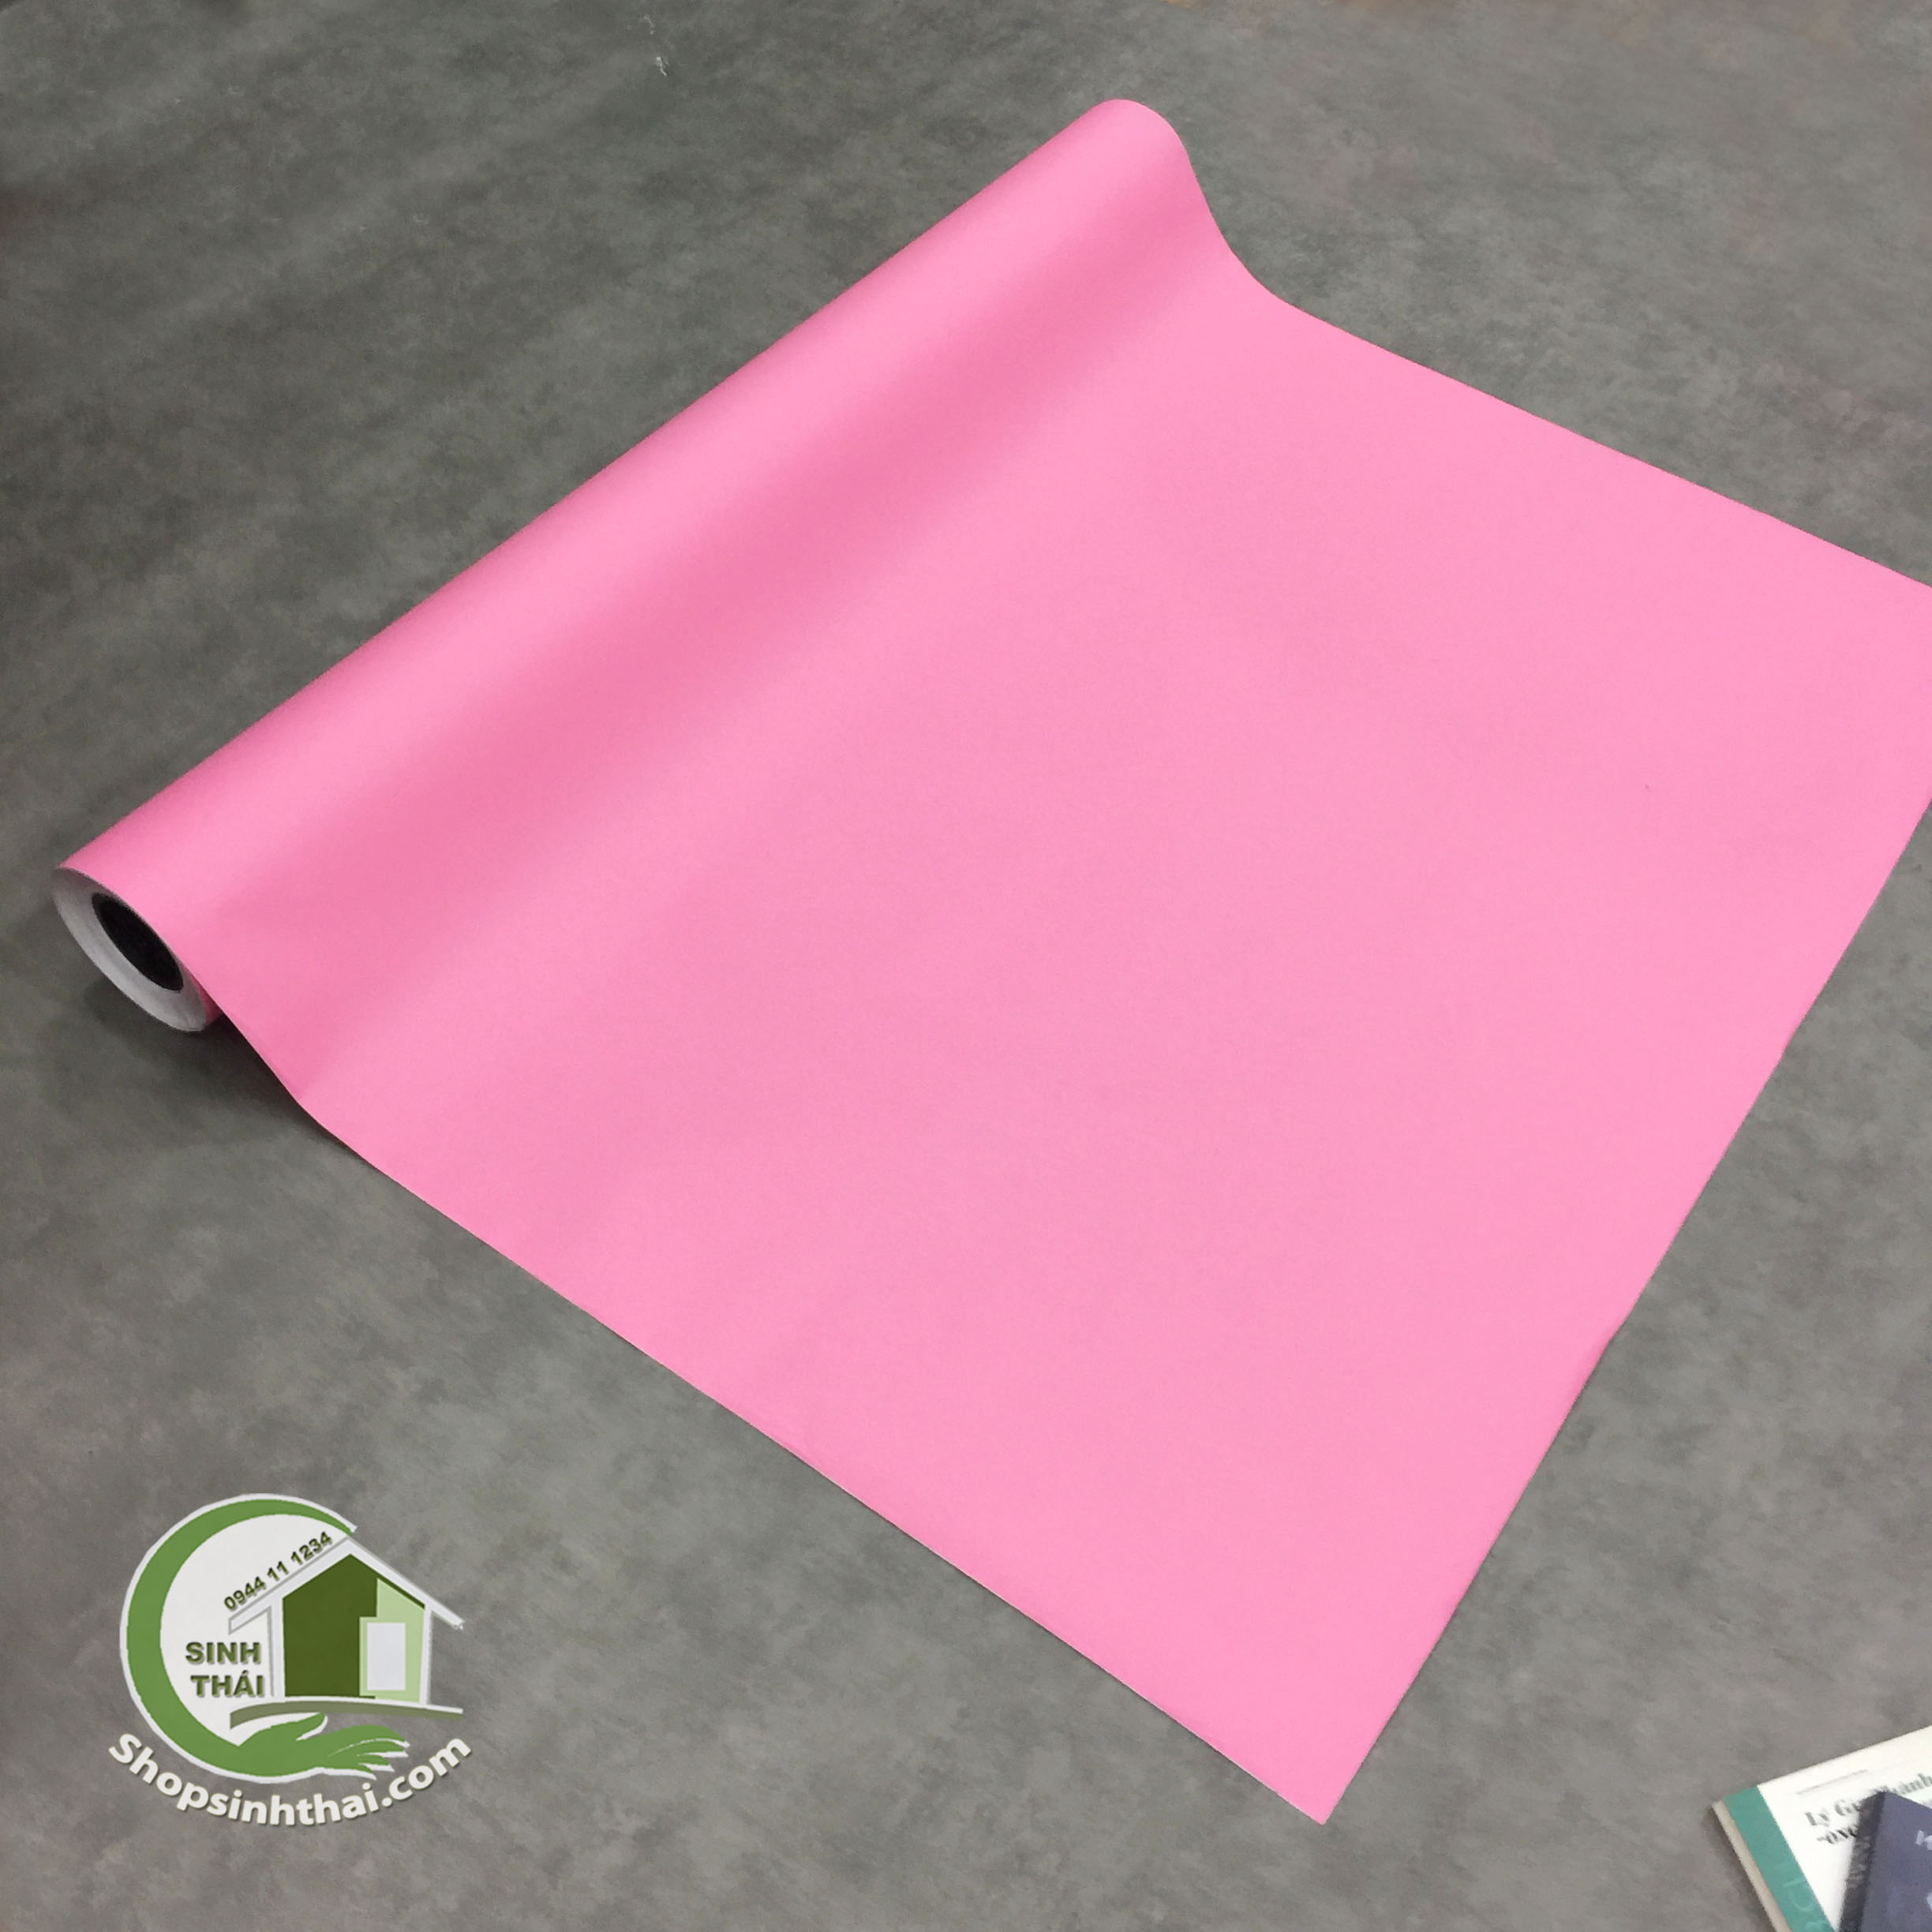 Phông nền giấy dán tường màu hồng: Với xu hướng thiết kế nội thất hiện nay, màu hồng được xem là một sắc thái rất thú vị. Cùng với đó, phông nền giấy dán tường màu hồng là lựa chọn tối ưu cho các không gian sống, làm việc hoặc giải trí. Với chất liệu giấy cao cấp, độ bền và chống thấm tốt, sản phẩm sẽ giúp cho ngôi nhà bạn trở nên đa sắc và hút mắt hơn. Hãy khám phá phông nền giấy dán tường màu hồng để mang đến một diện mạo mới mẻ cho ngôi nhà của bạn.